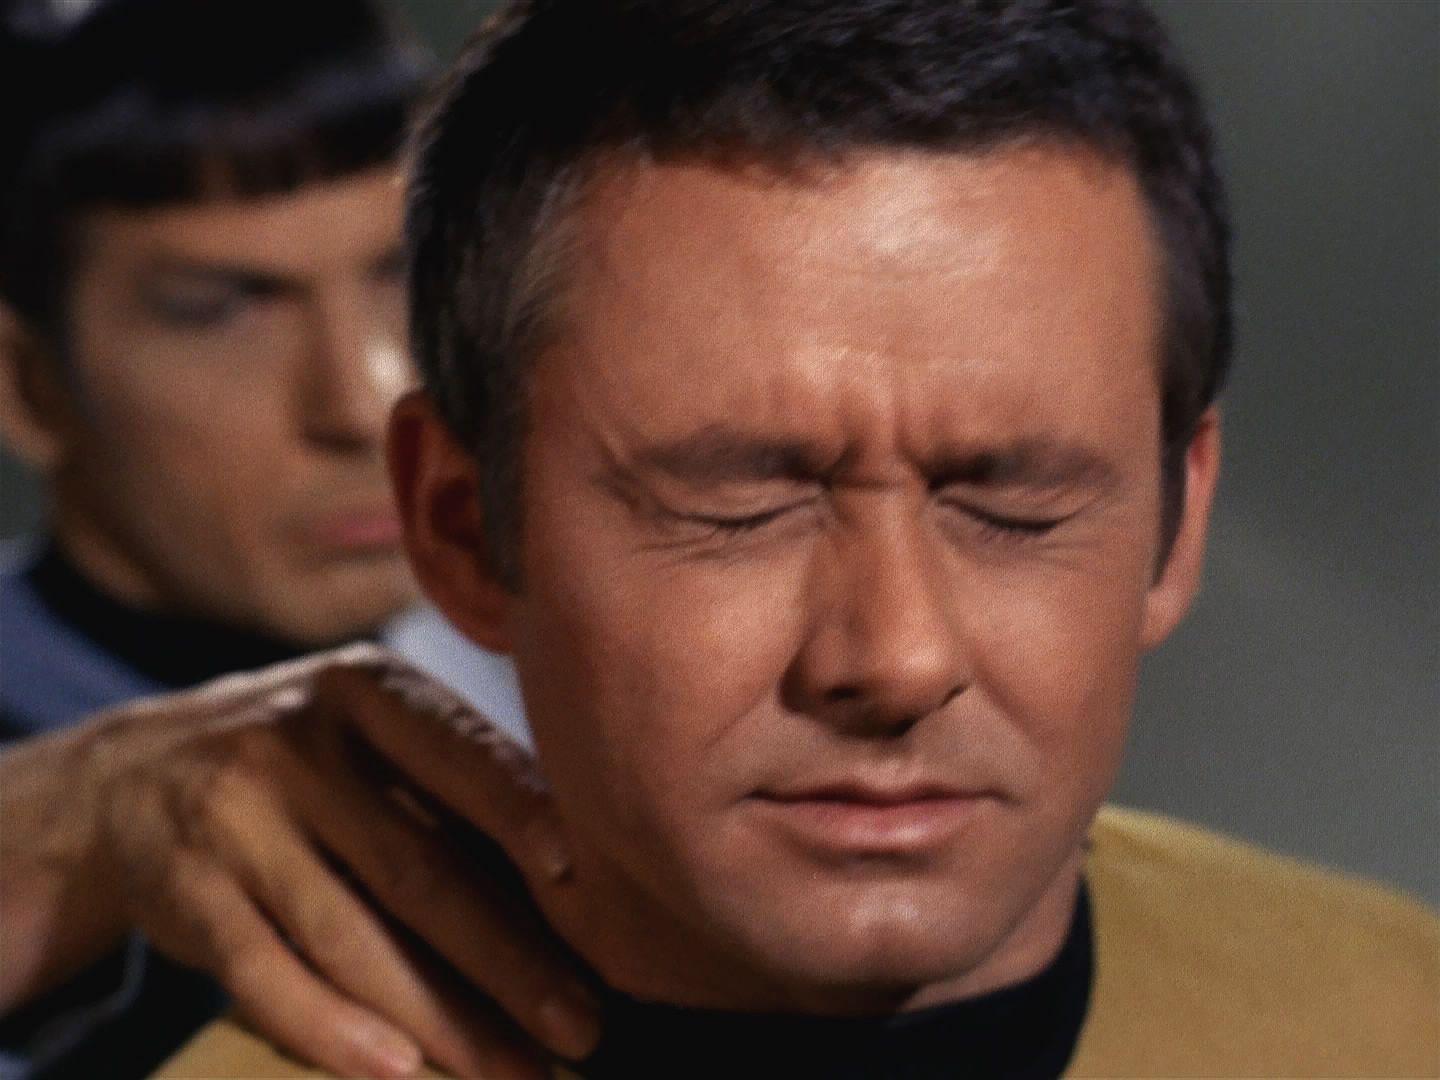 Scotty dokončuje opravy a Spock a Sulu se zatím transportují pro kapitána. Christopher trval na tom, že půjde s nimi. Spock mu právem nedůvěřoval, kapitán se opět pokusil utéct.